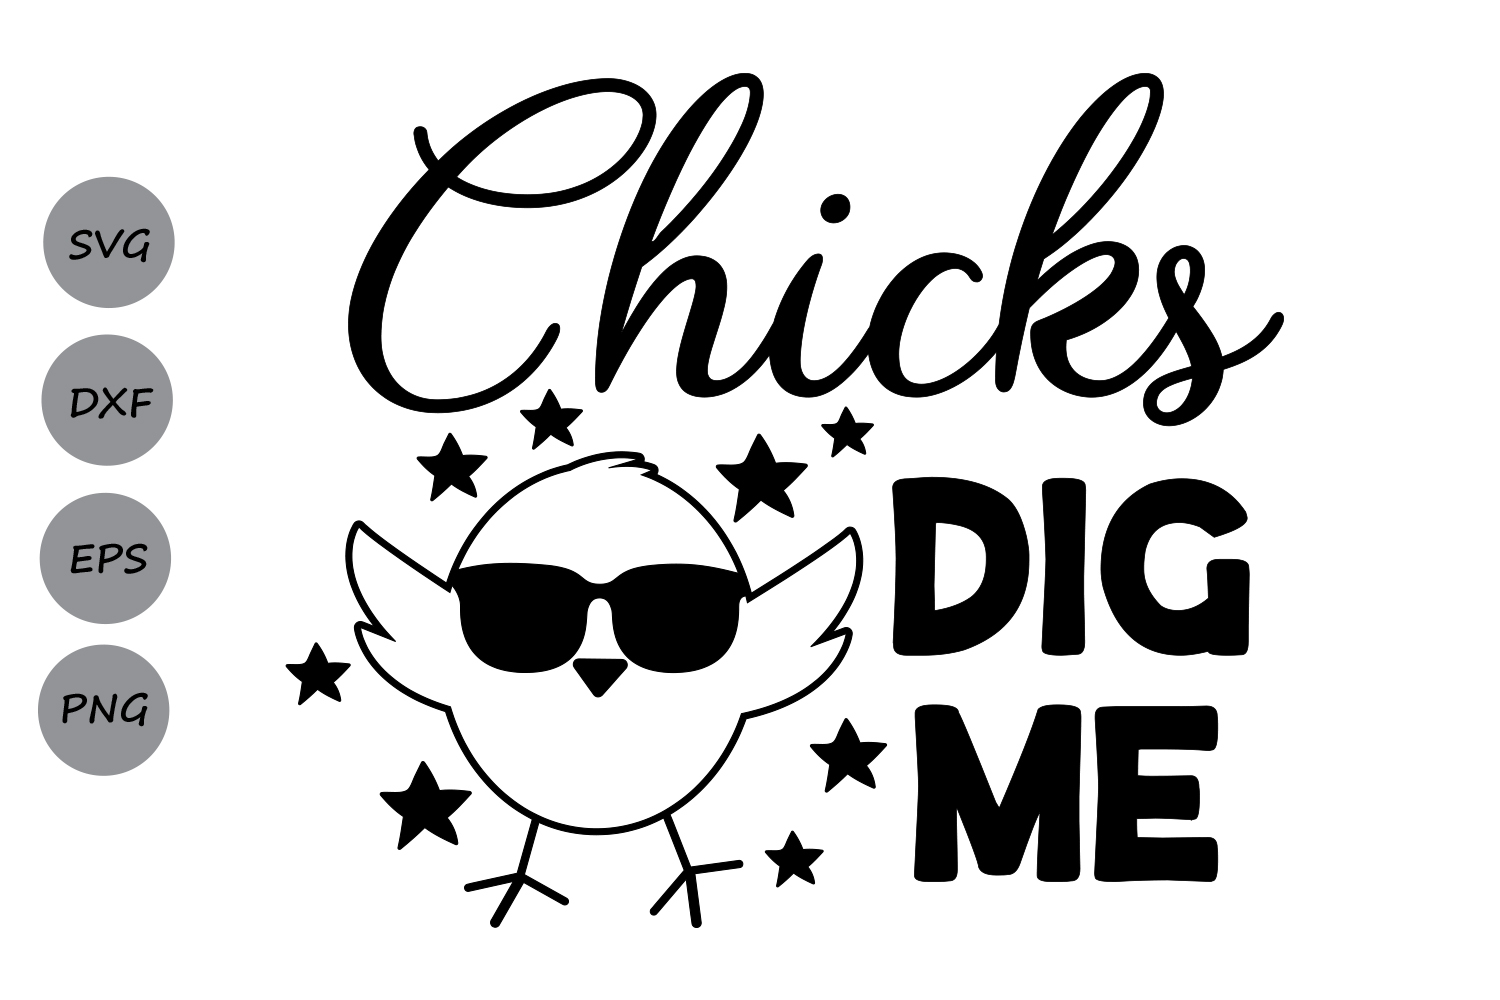 Download Chicks dig me Svg, Easter SVG, Easter Chicks Svg, Easter ...